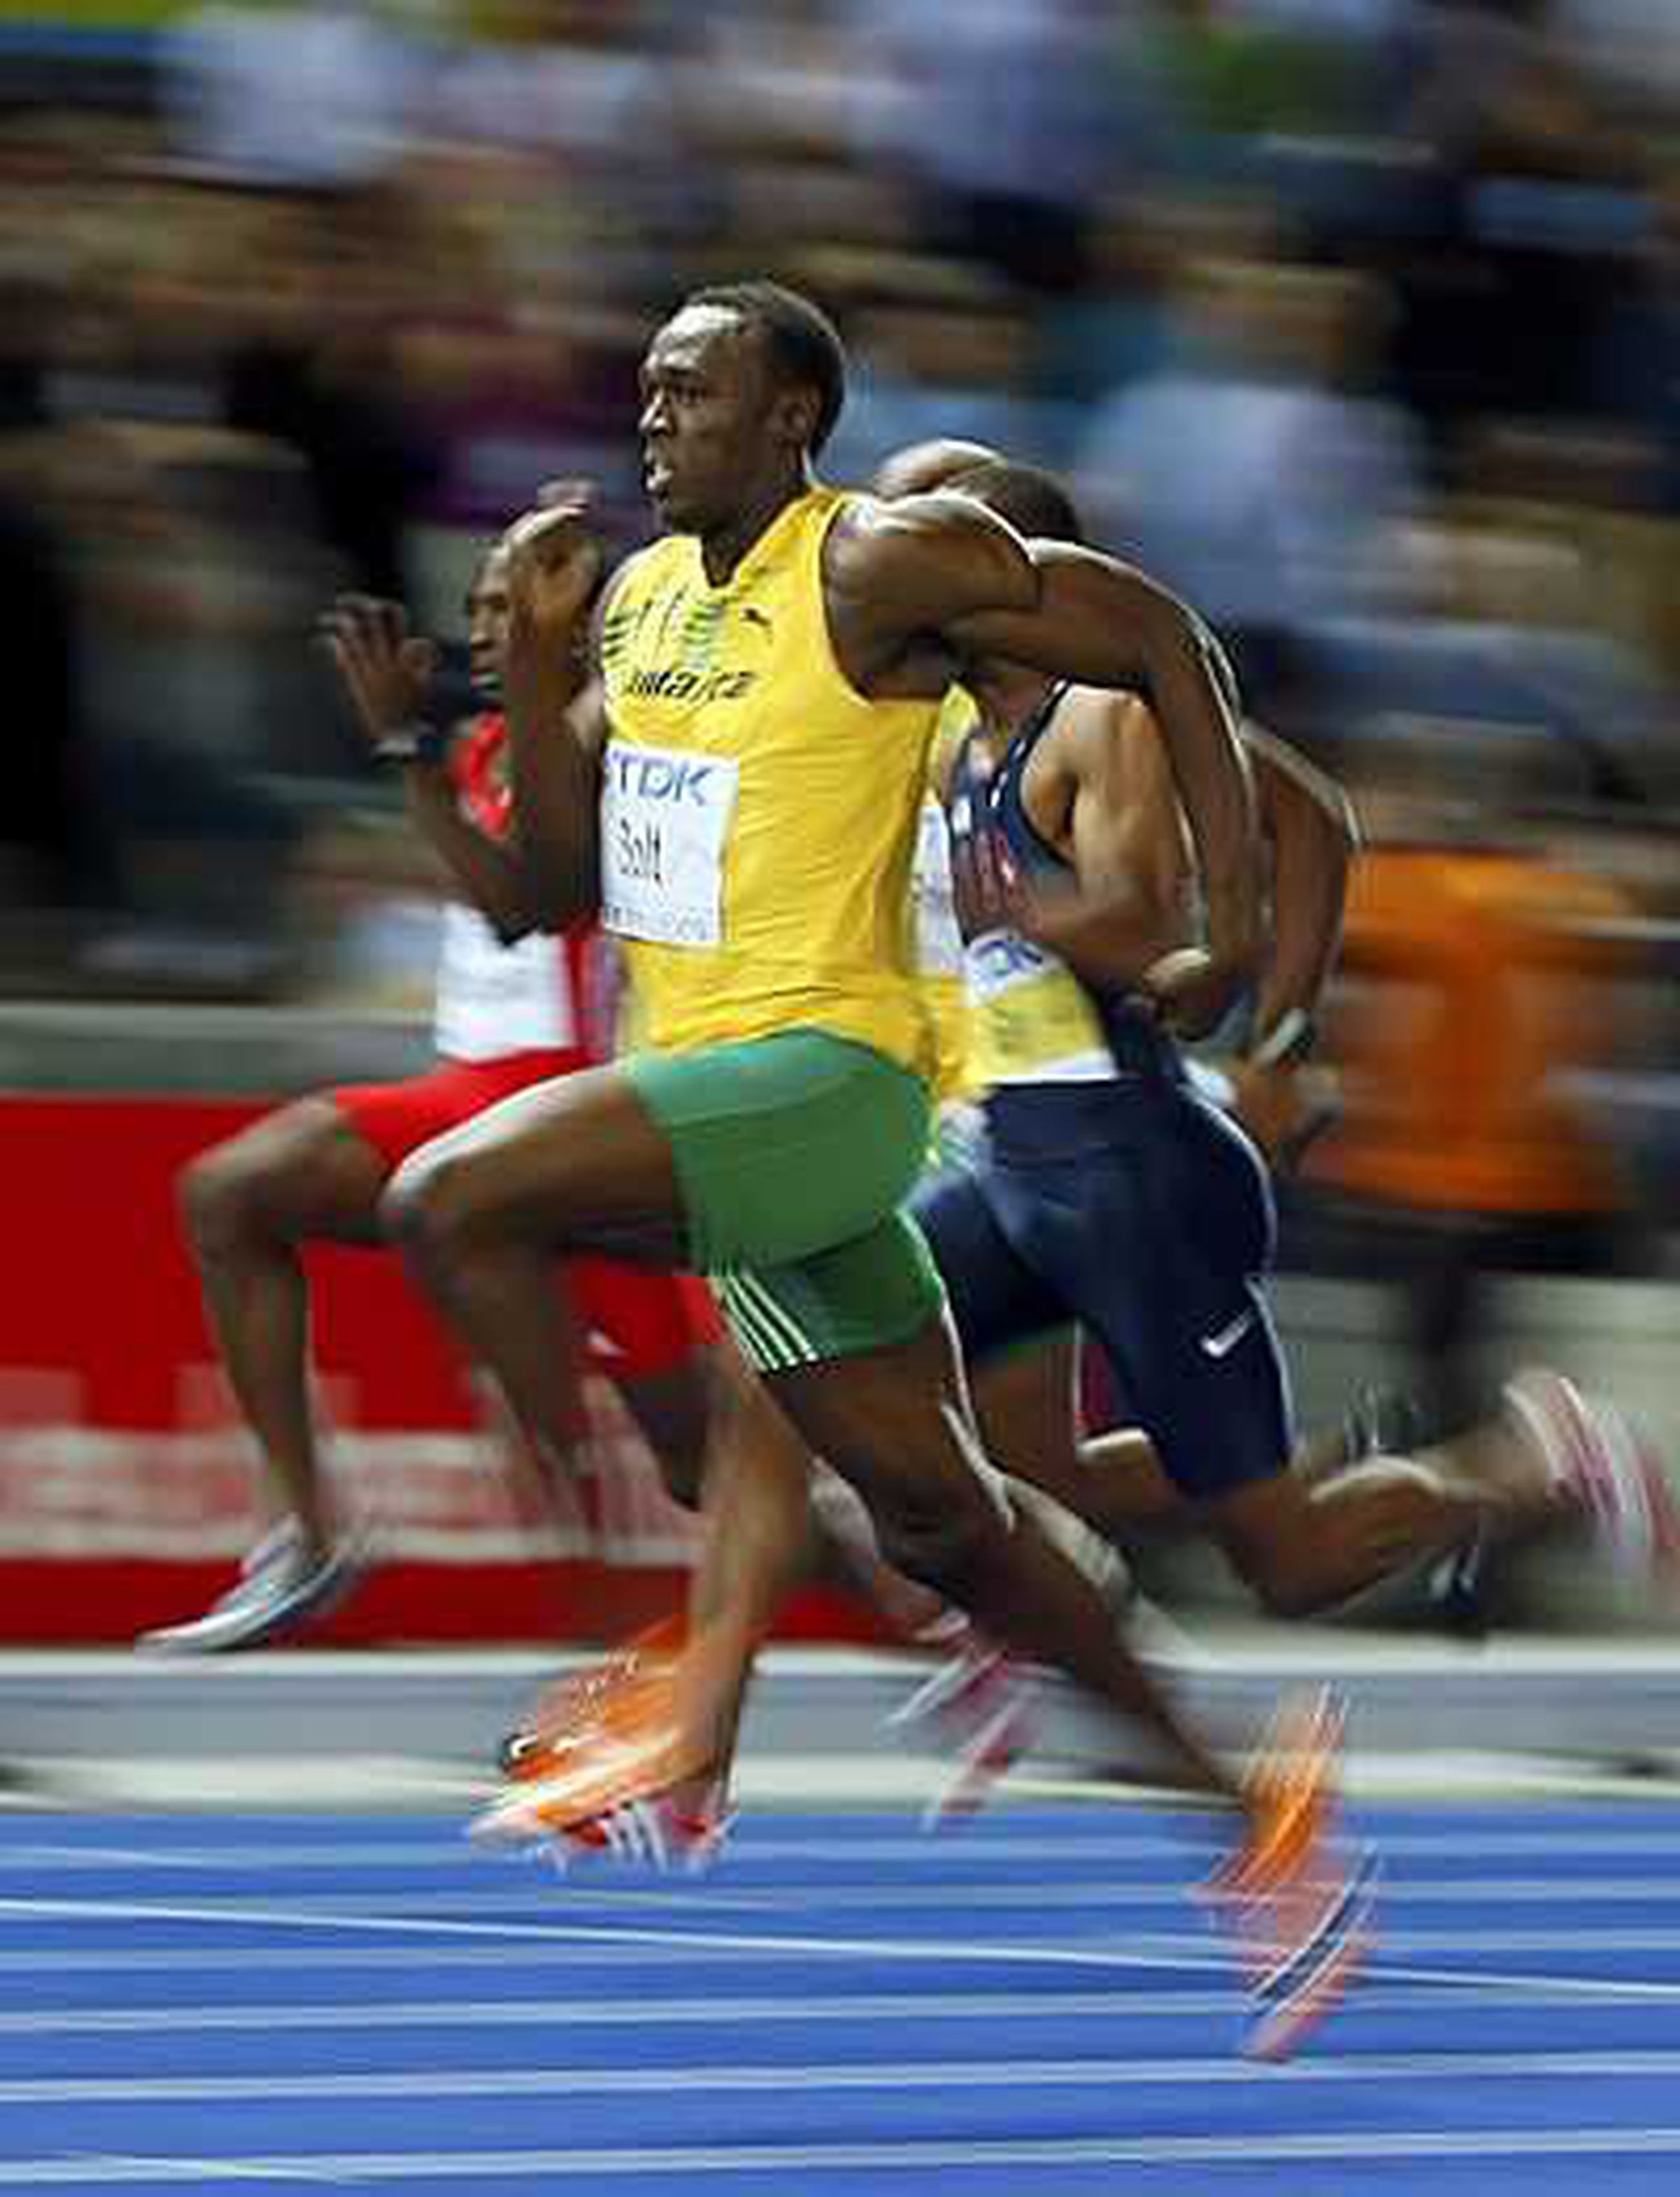 Легкая атлетика бег 100 м. Легкая атлетика бег Усейн болт. Усейн болт бег 100 метров 1. Усейн болт 60 метров рекорд. Усейн болт на линии старта.